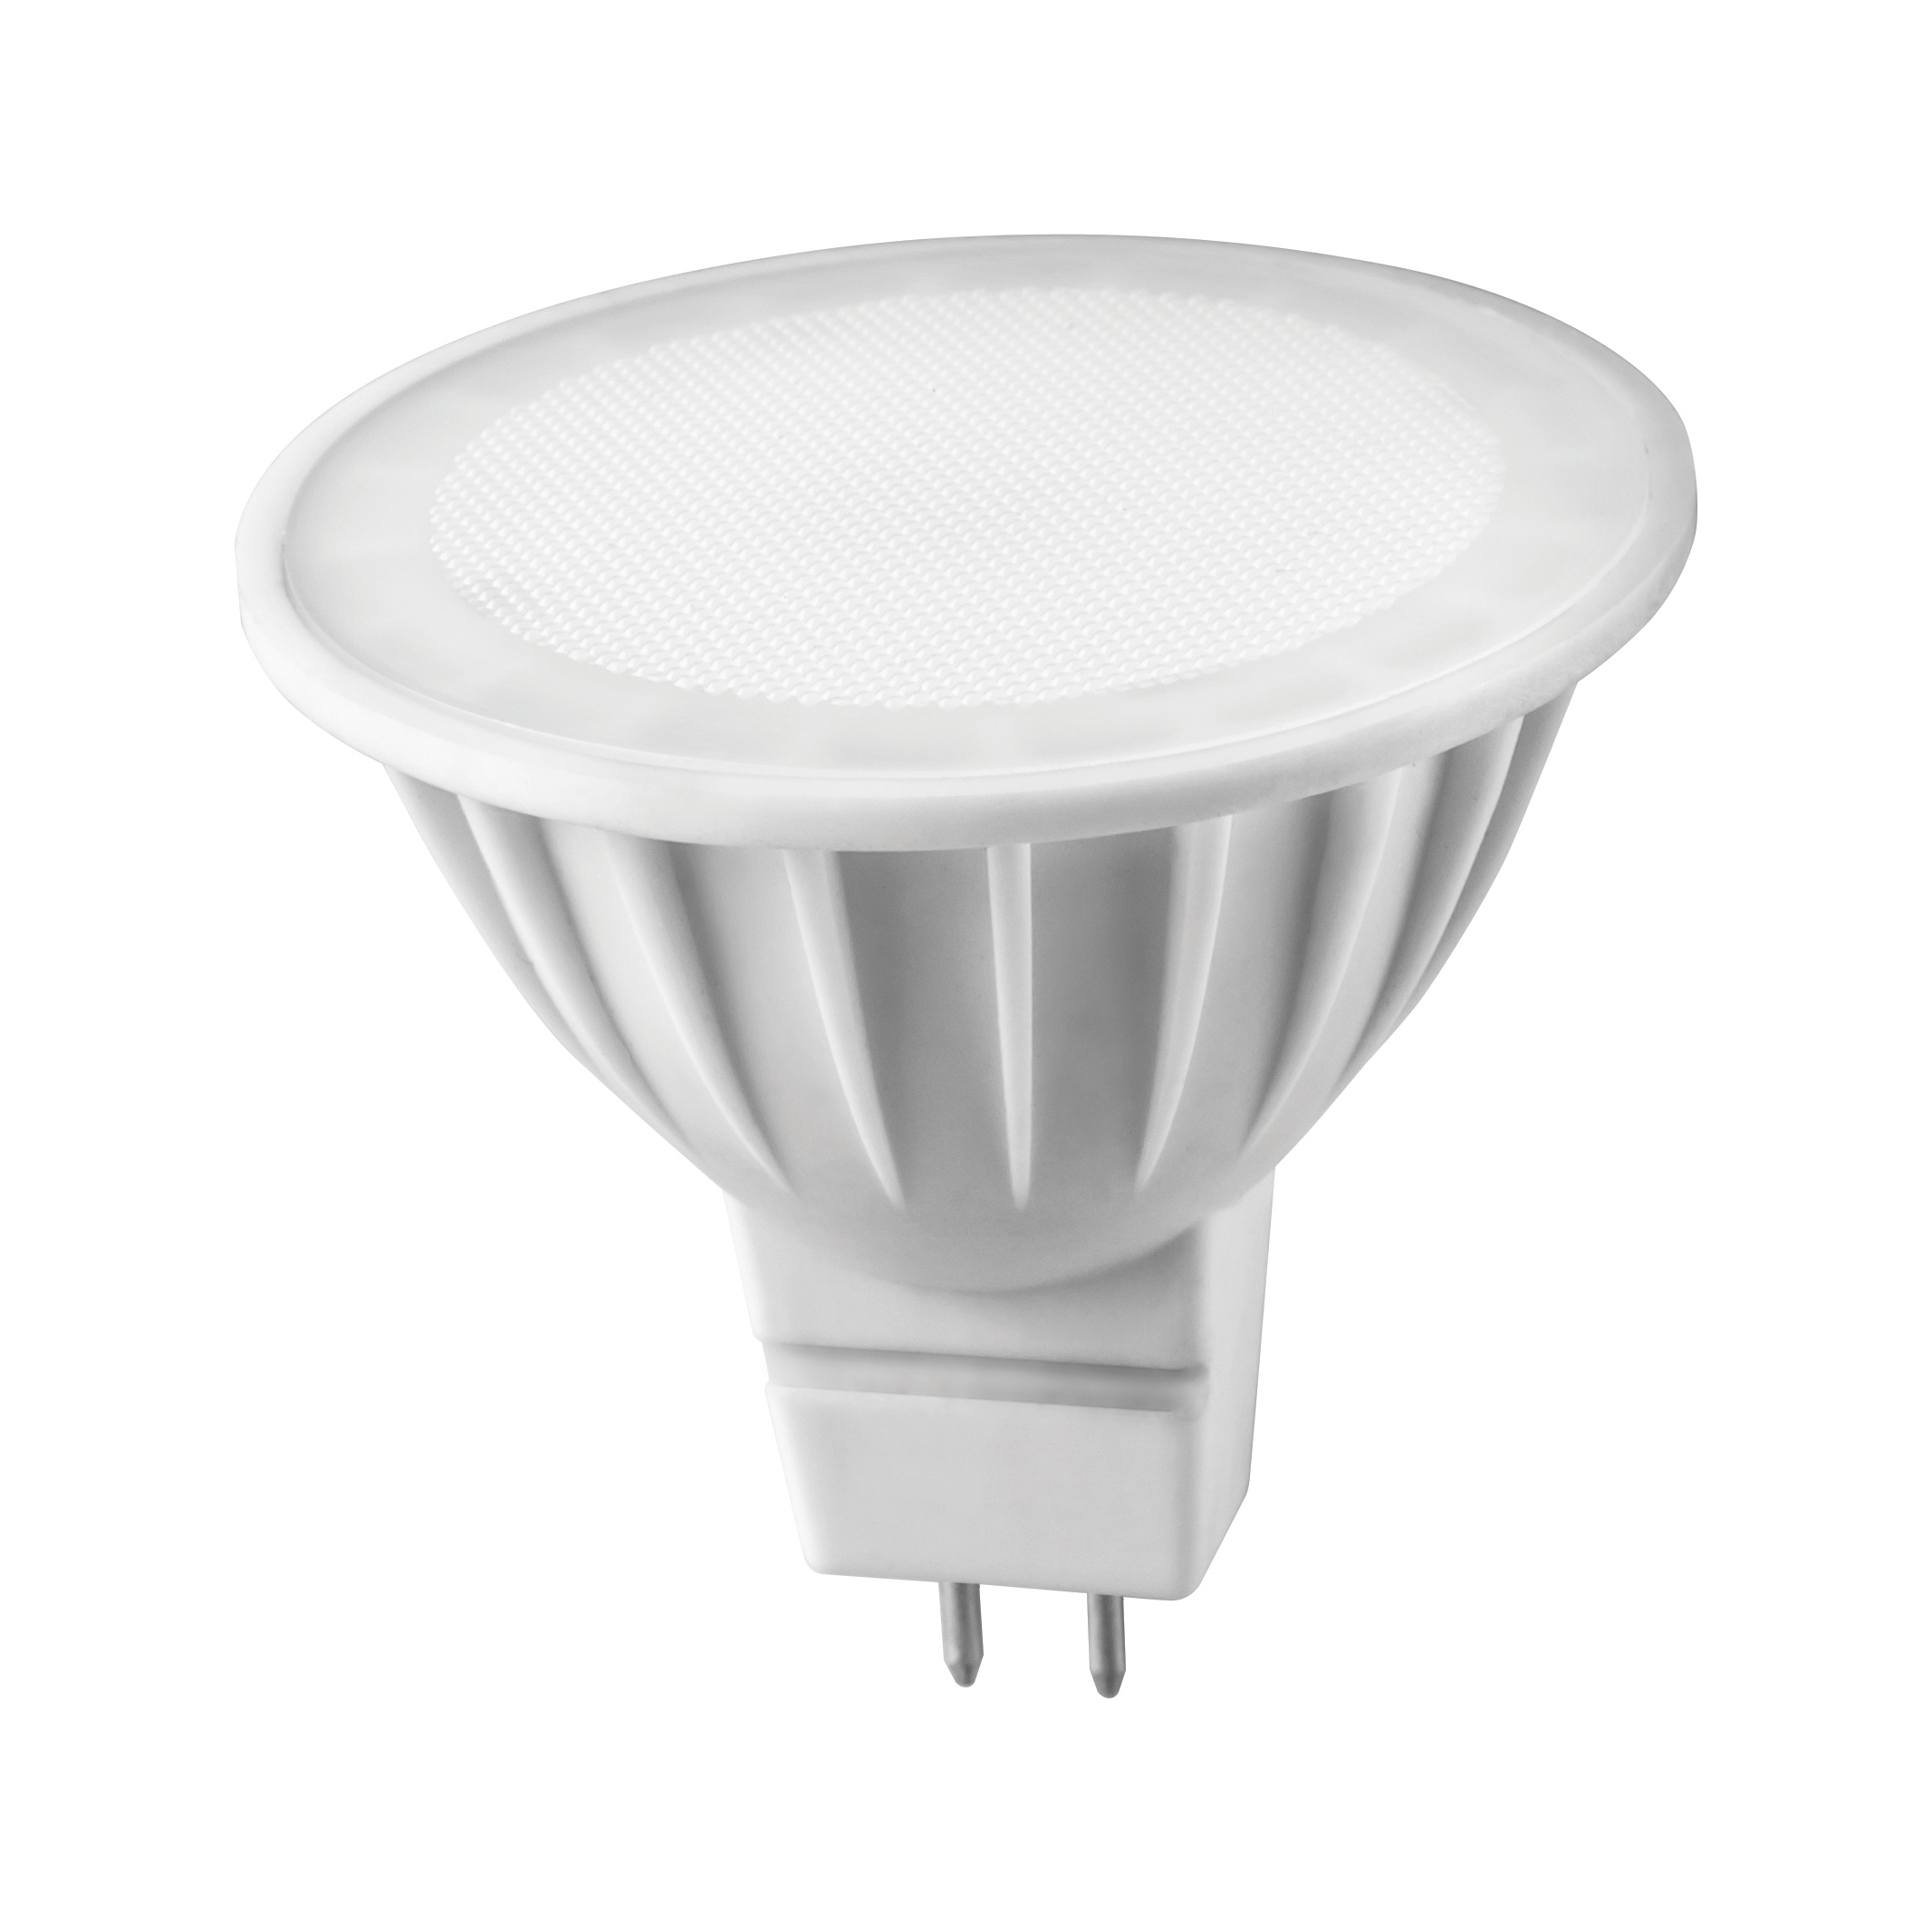 Лампа светодиодная LED Онлайт, GU5.3, MR16, 5 Вт, 3000 K, теплый свет